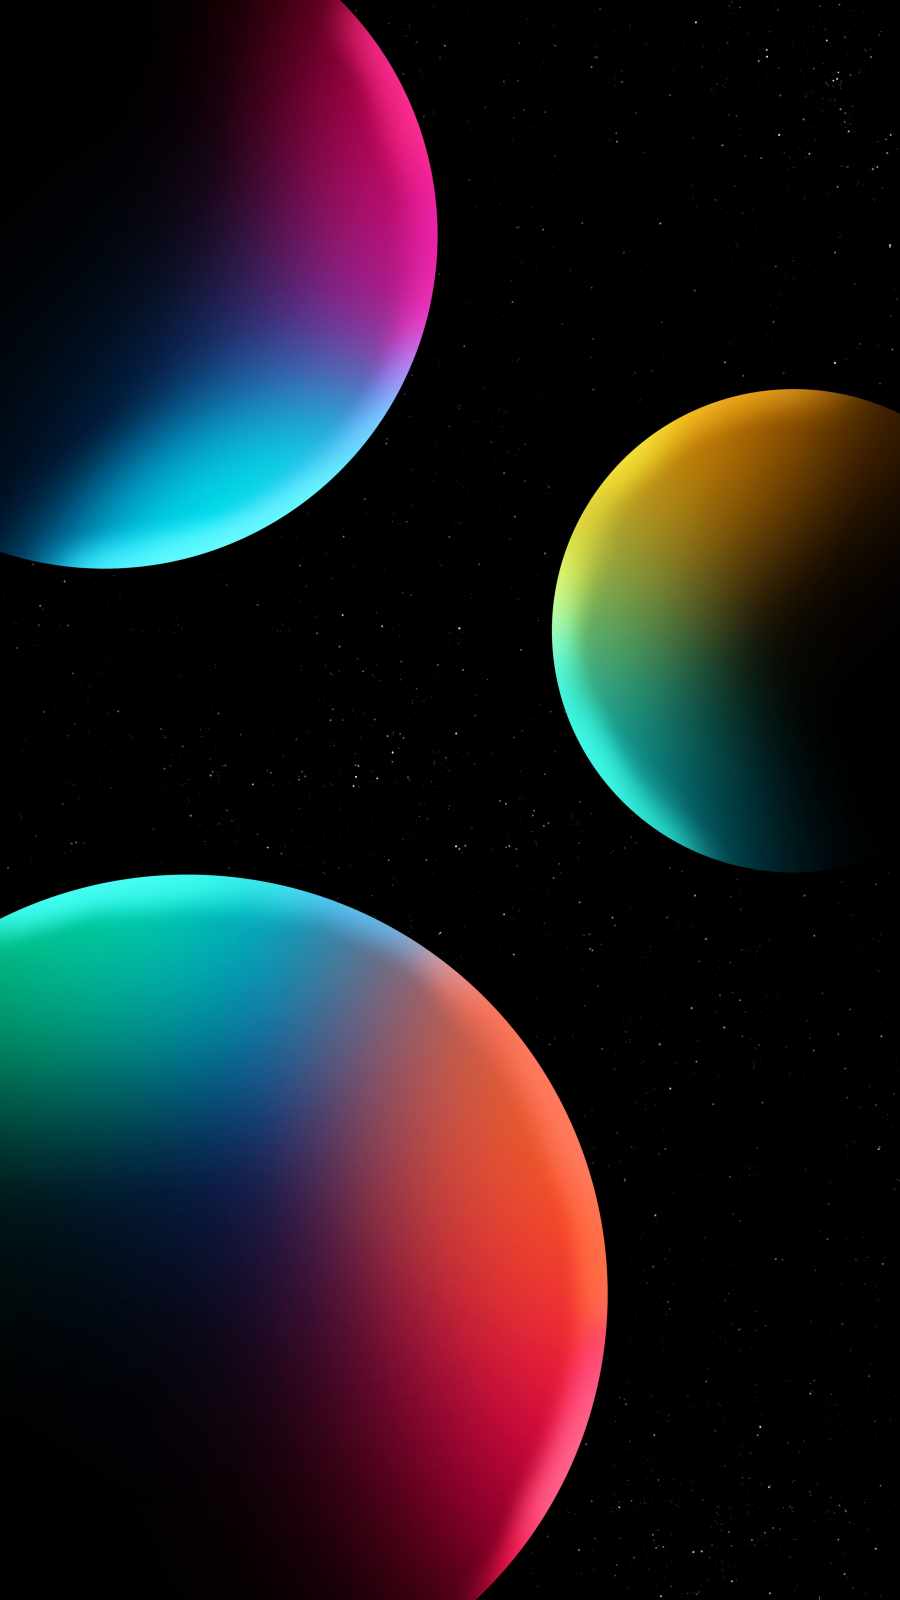 Space Spheres iPhone Wallpaper